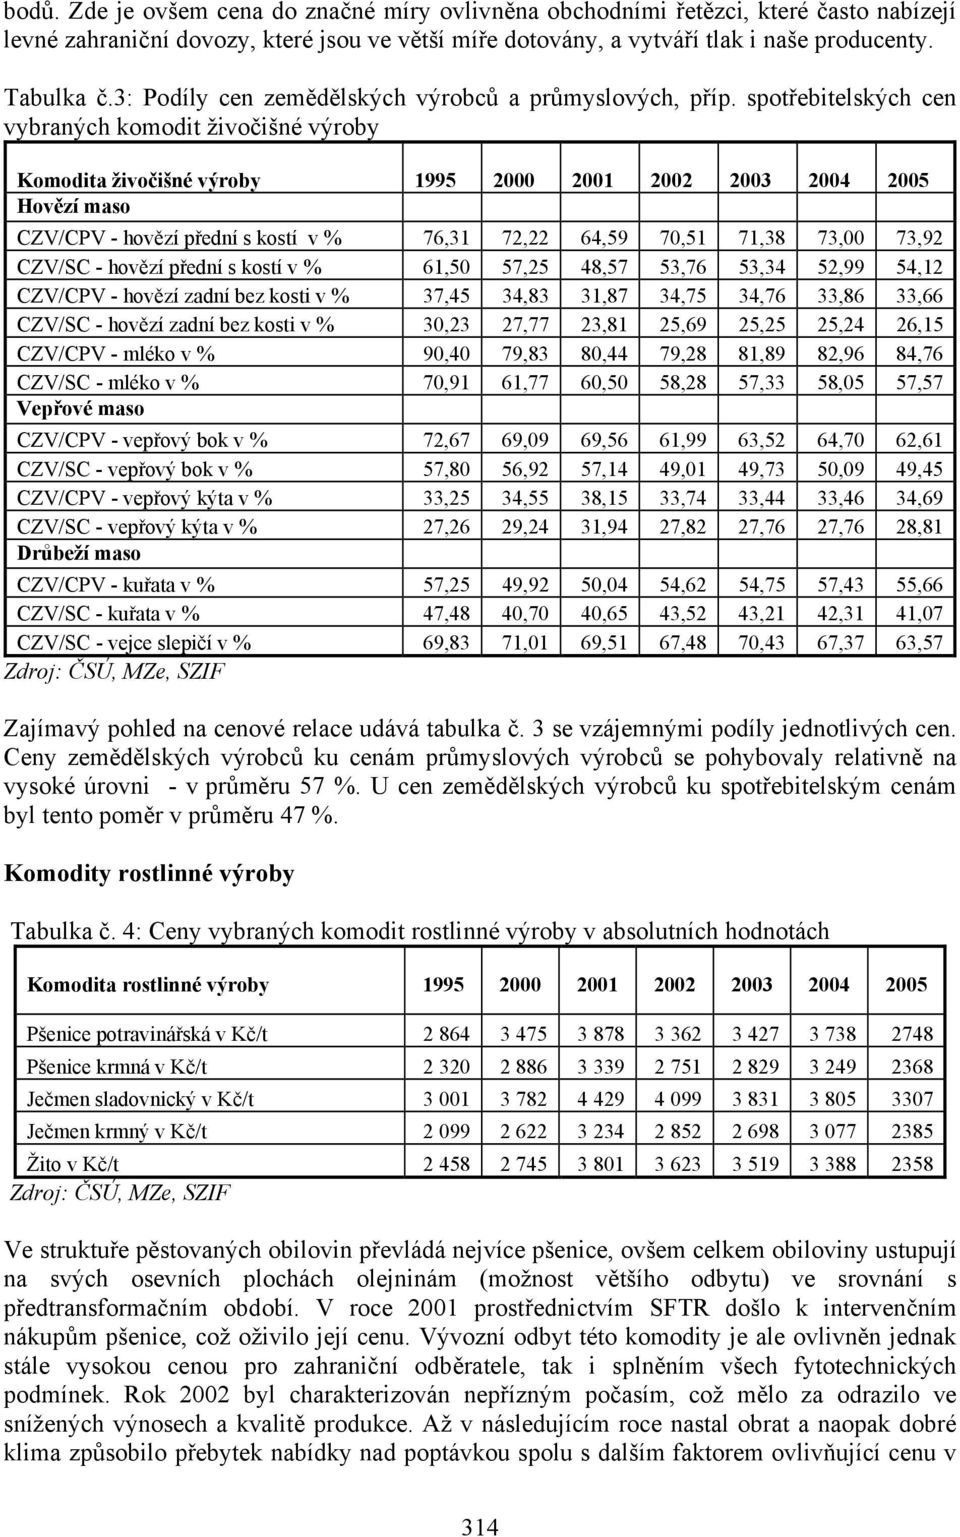 spotřebitelských cen vybraných komodit živočišné výroby Komodita živočišné výroby 1995 2000 2001 2002 2003 2004 2005 CZV/CPV - hovězí přední s kostí v % 76,31 72,22 64,59 70,51 71,38 73,00 73,92